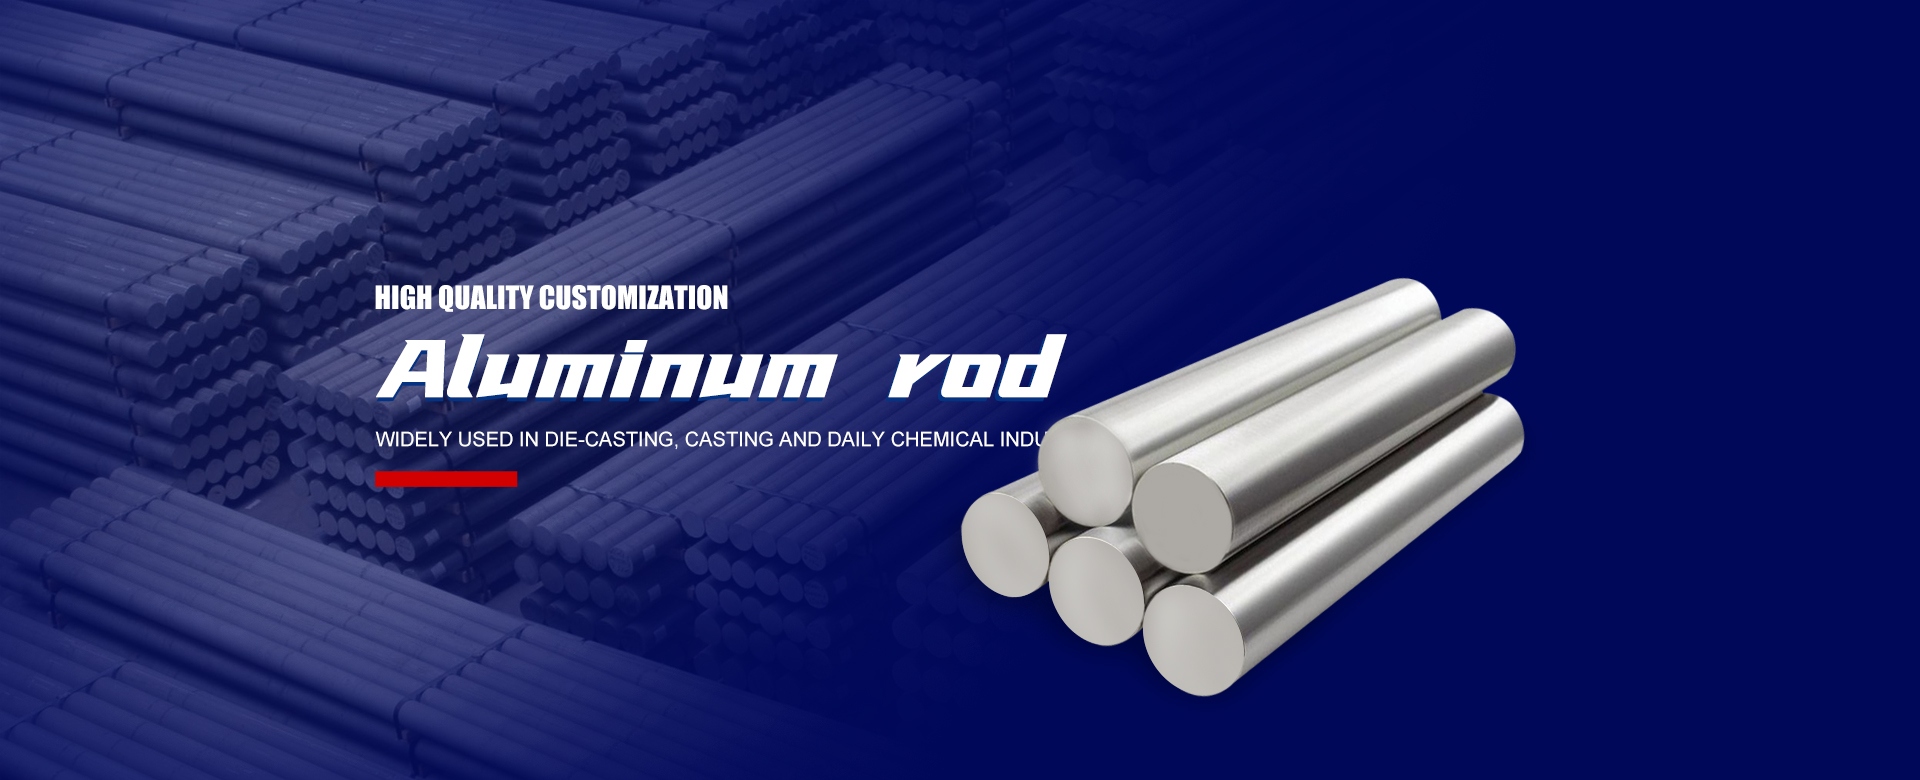 Aluminum rod